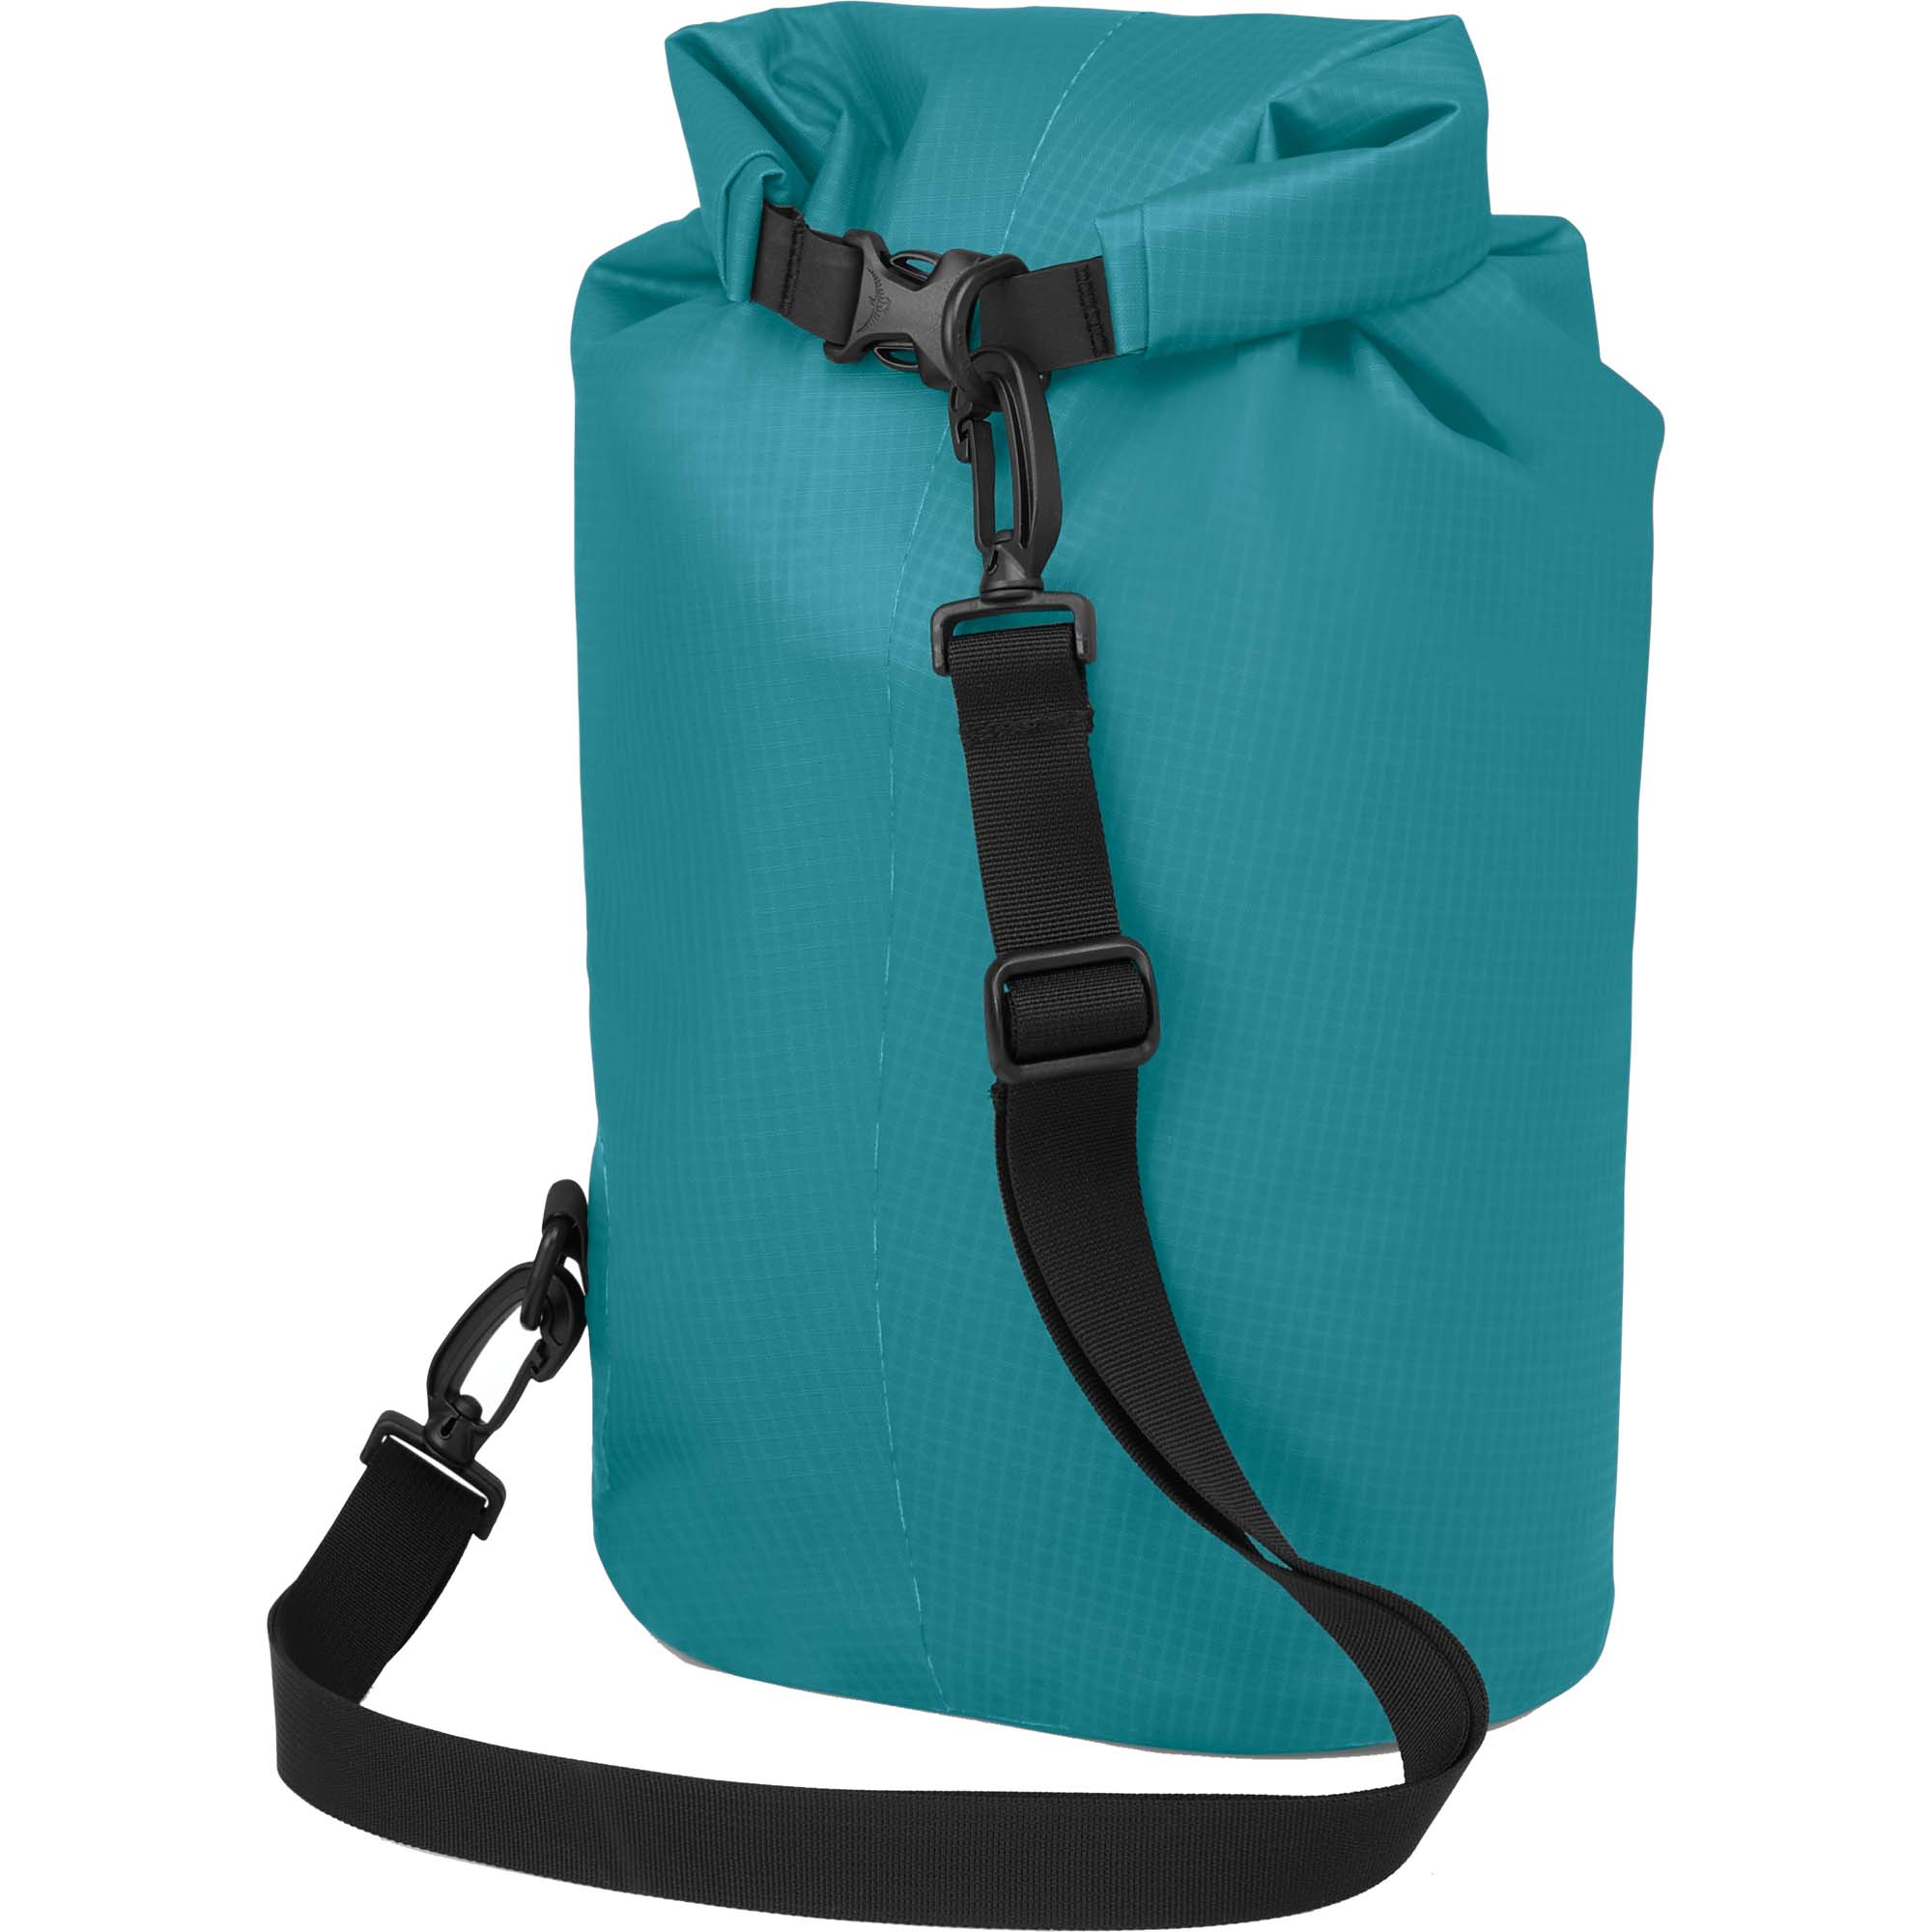 Osprey Wildwater 8 Waterproof Dry Bag